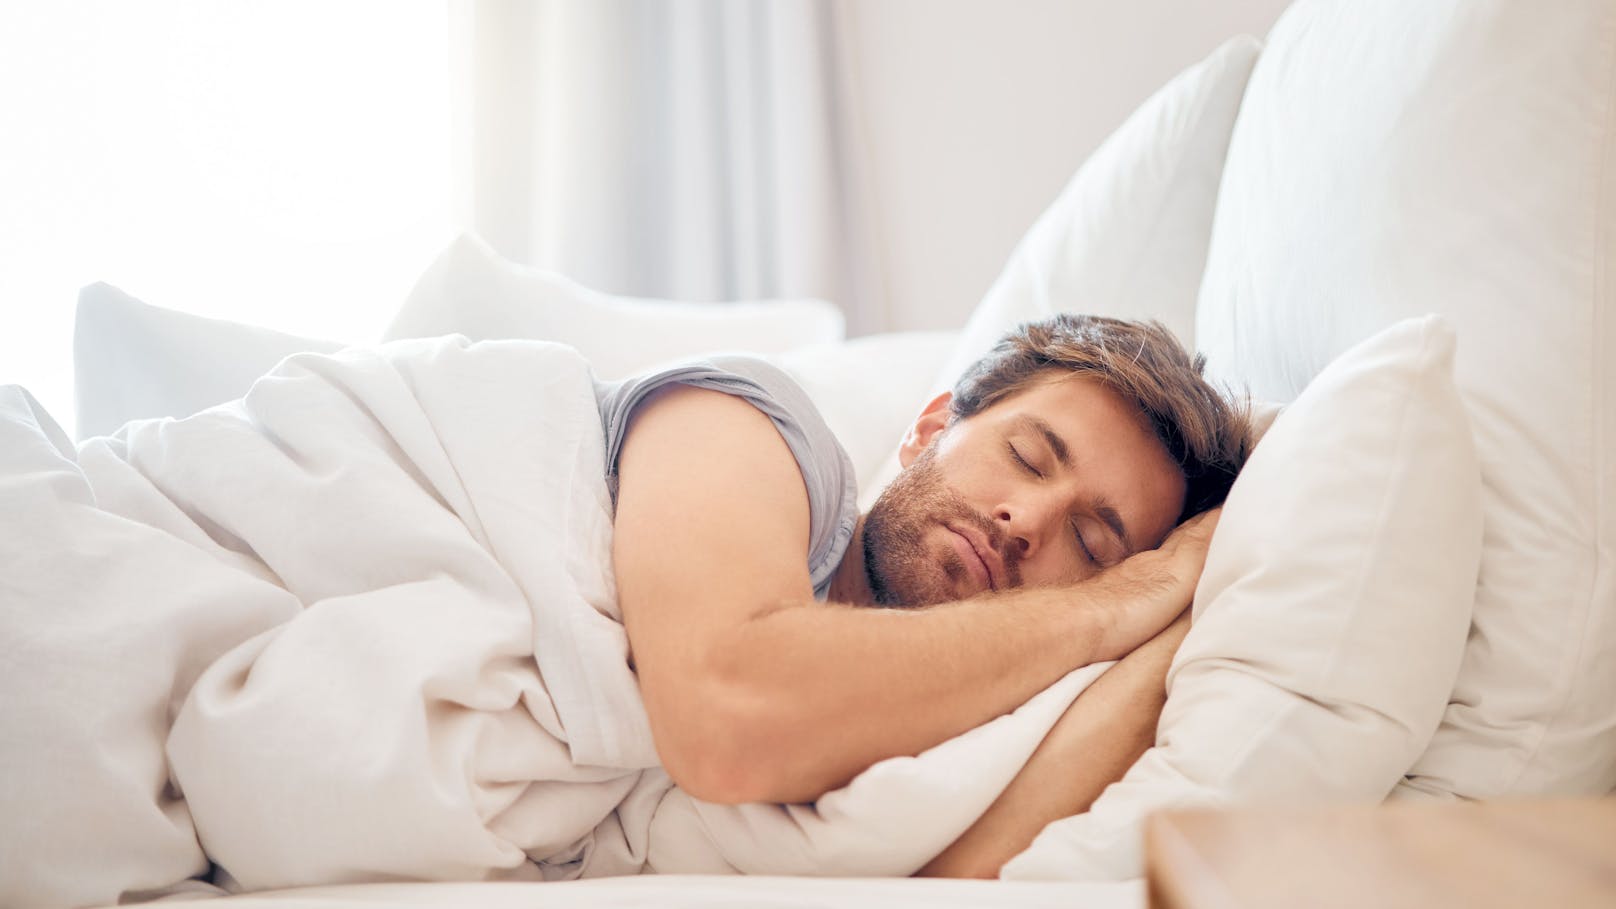 Zucken im Schlaf: Ist es ungesund?